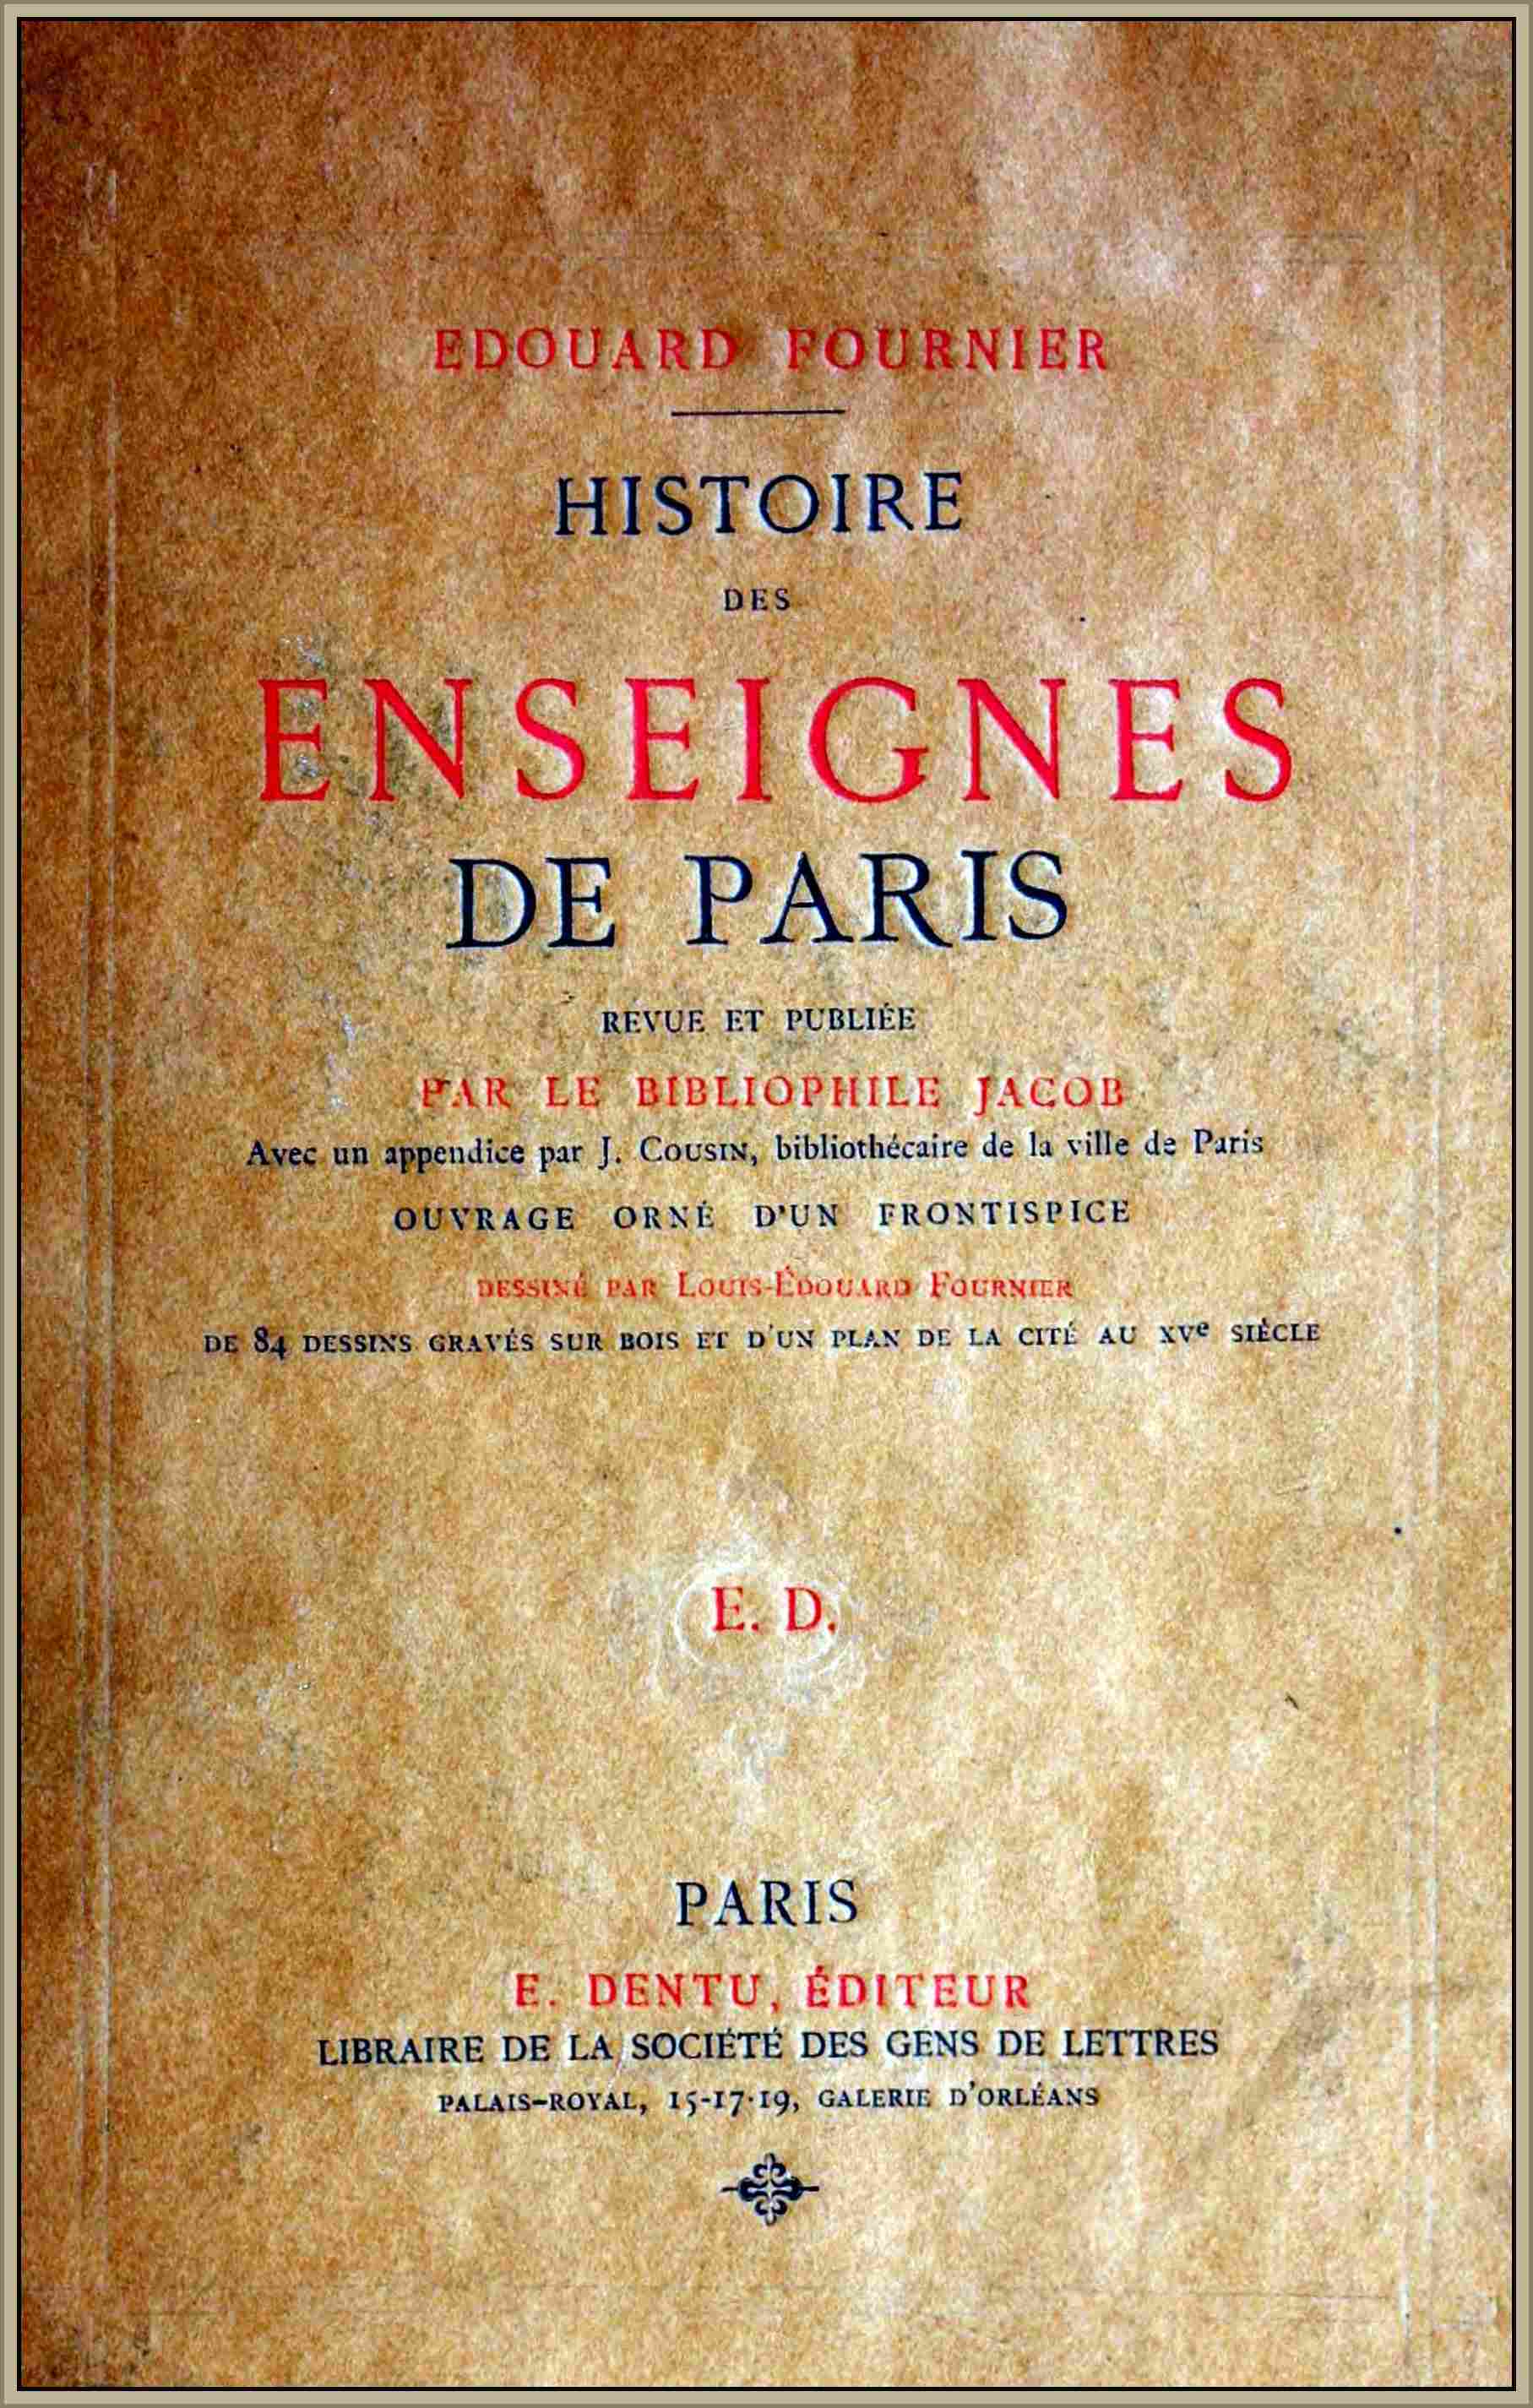 The Project Gutenberg eBook of Histoire des Enseignes de Paris.